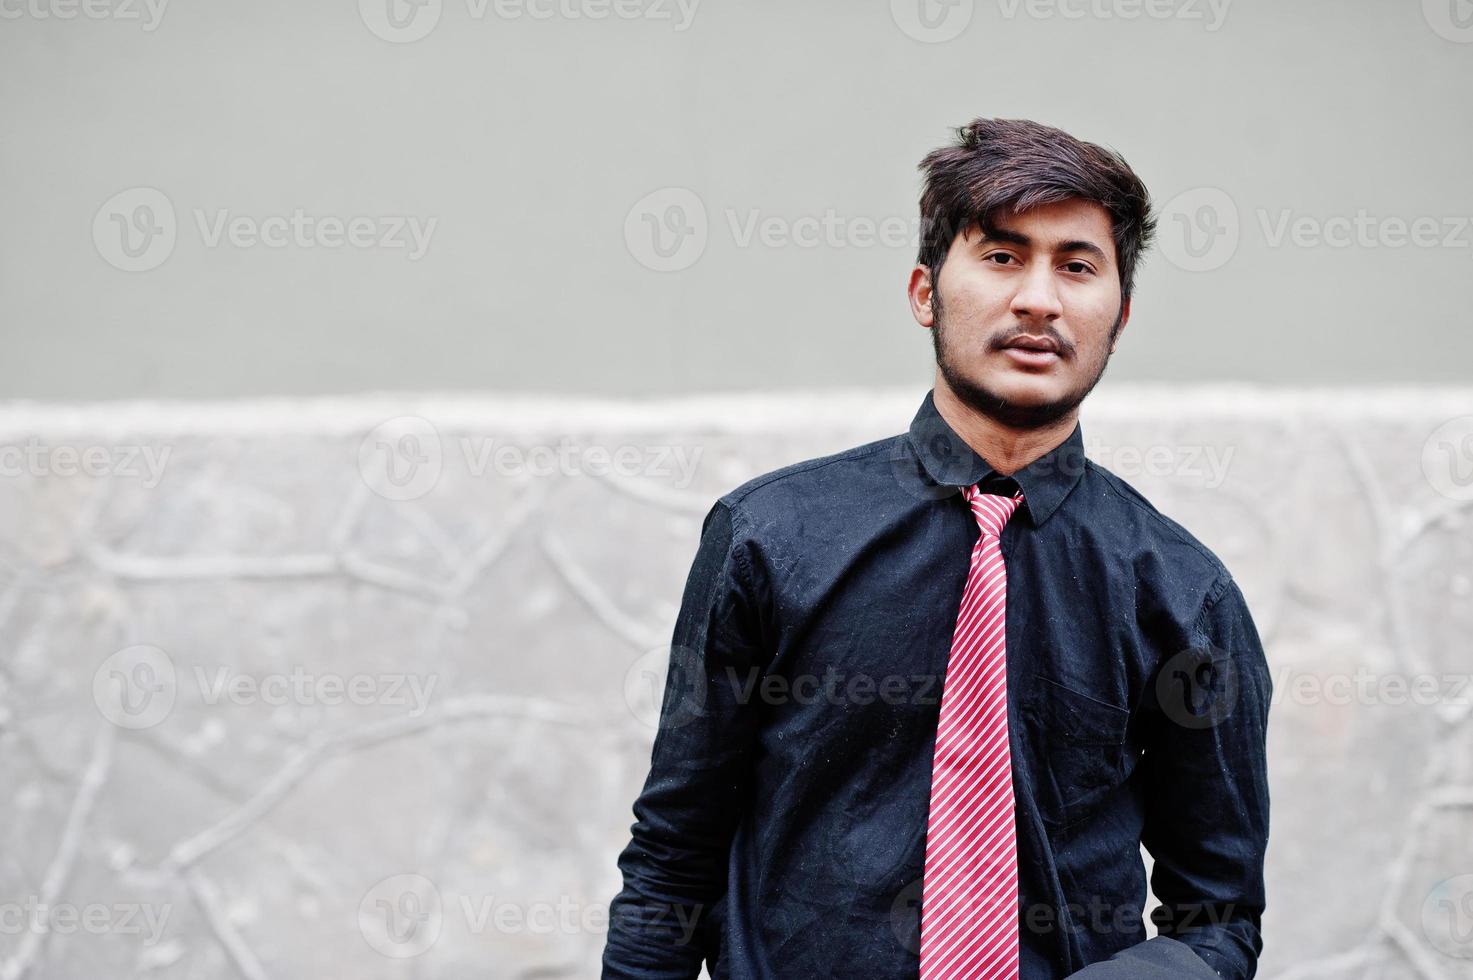 giovane indiano su camicia nera e cravatta poste all'aperto. foto